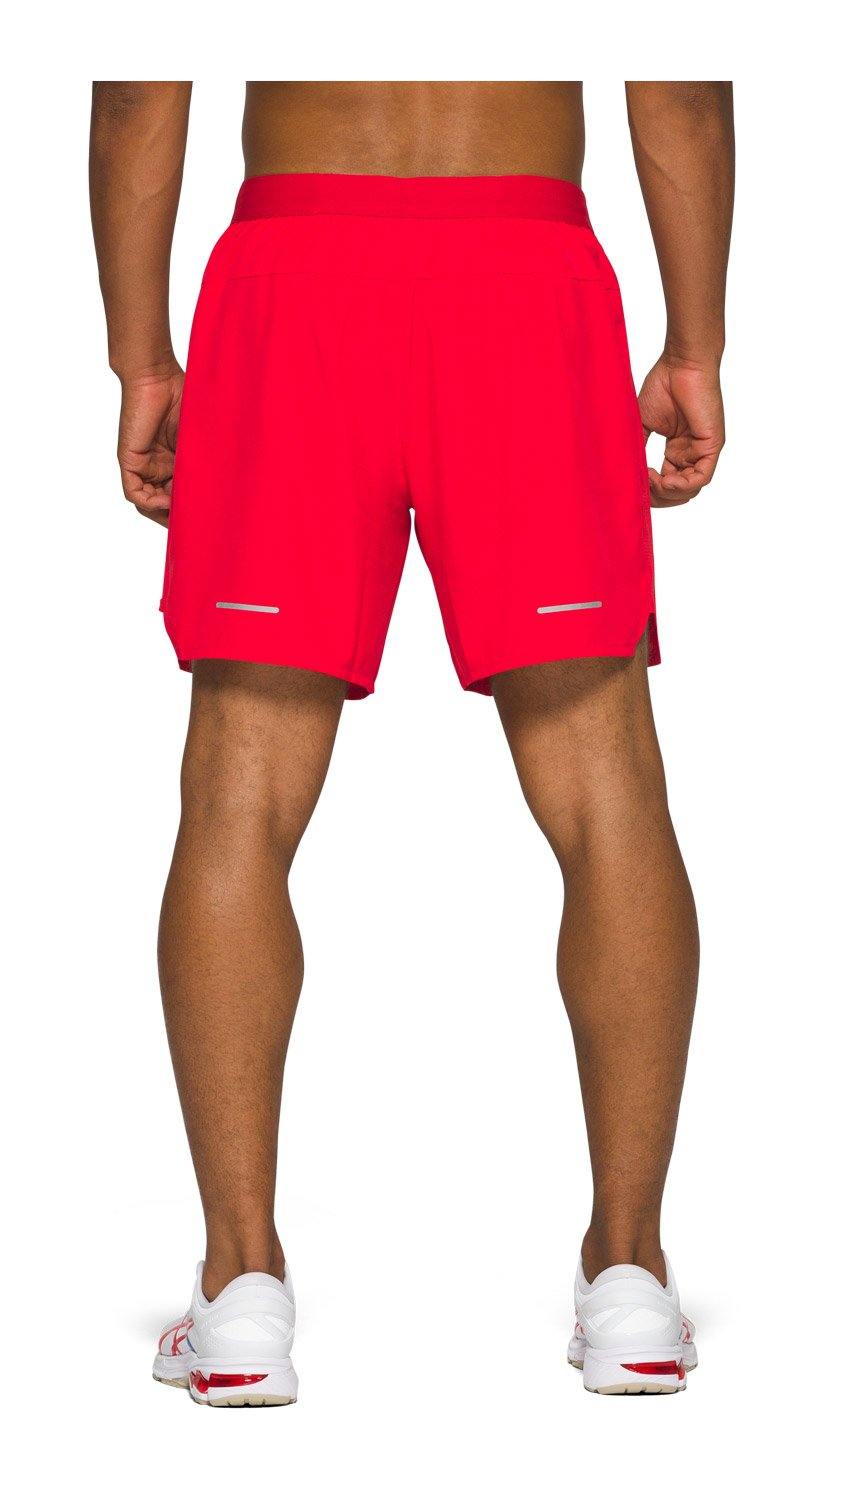 Tc shorts moscow. 44820 Softline шорты мужские. Шорты асикс мужские красные. 2в1 спортивные мужские шорты Nike. Шорты Donic Tampa черные мужские.